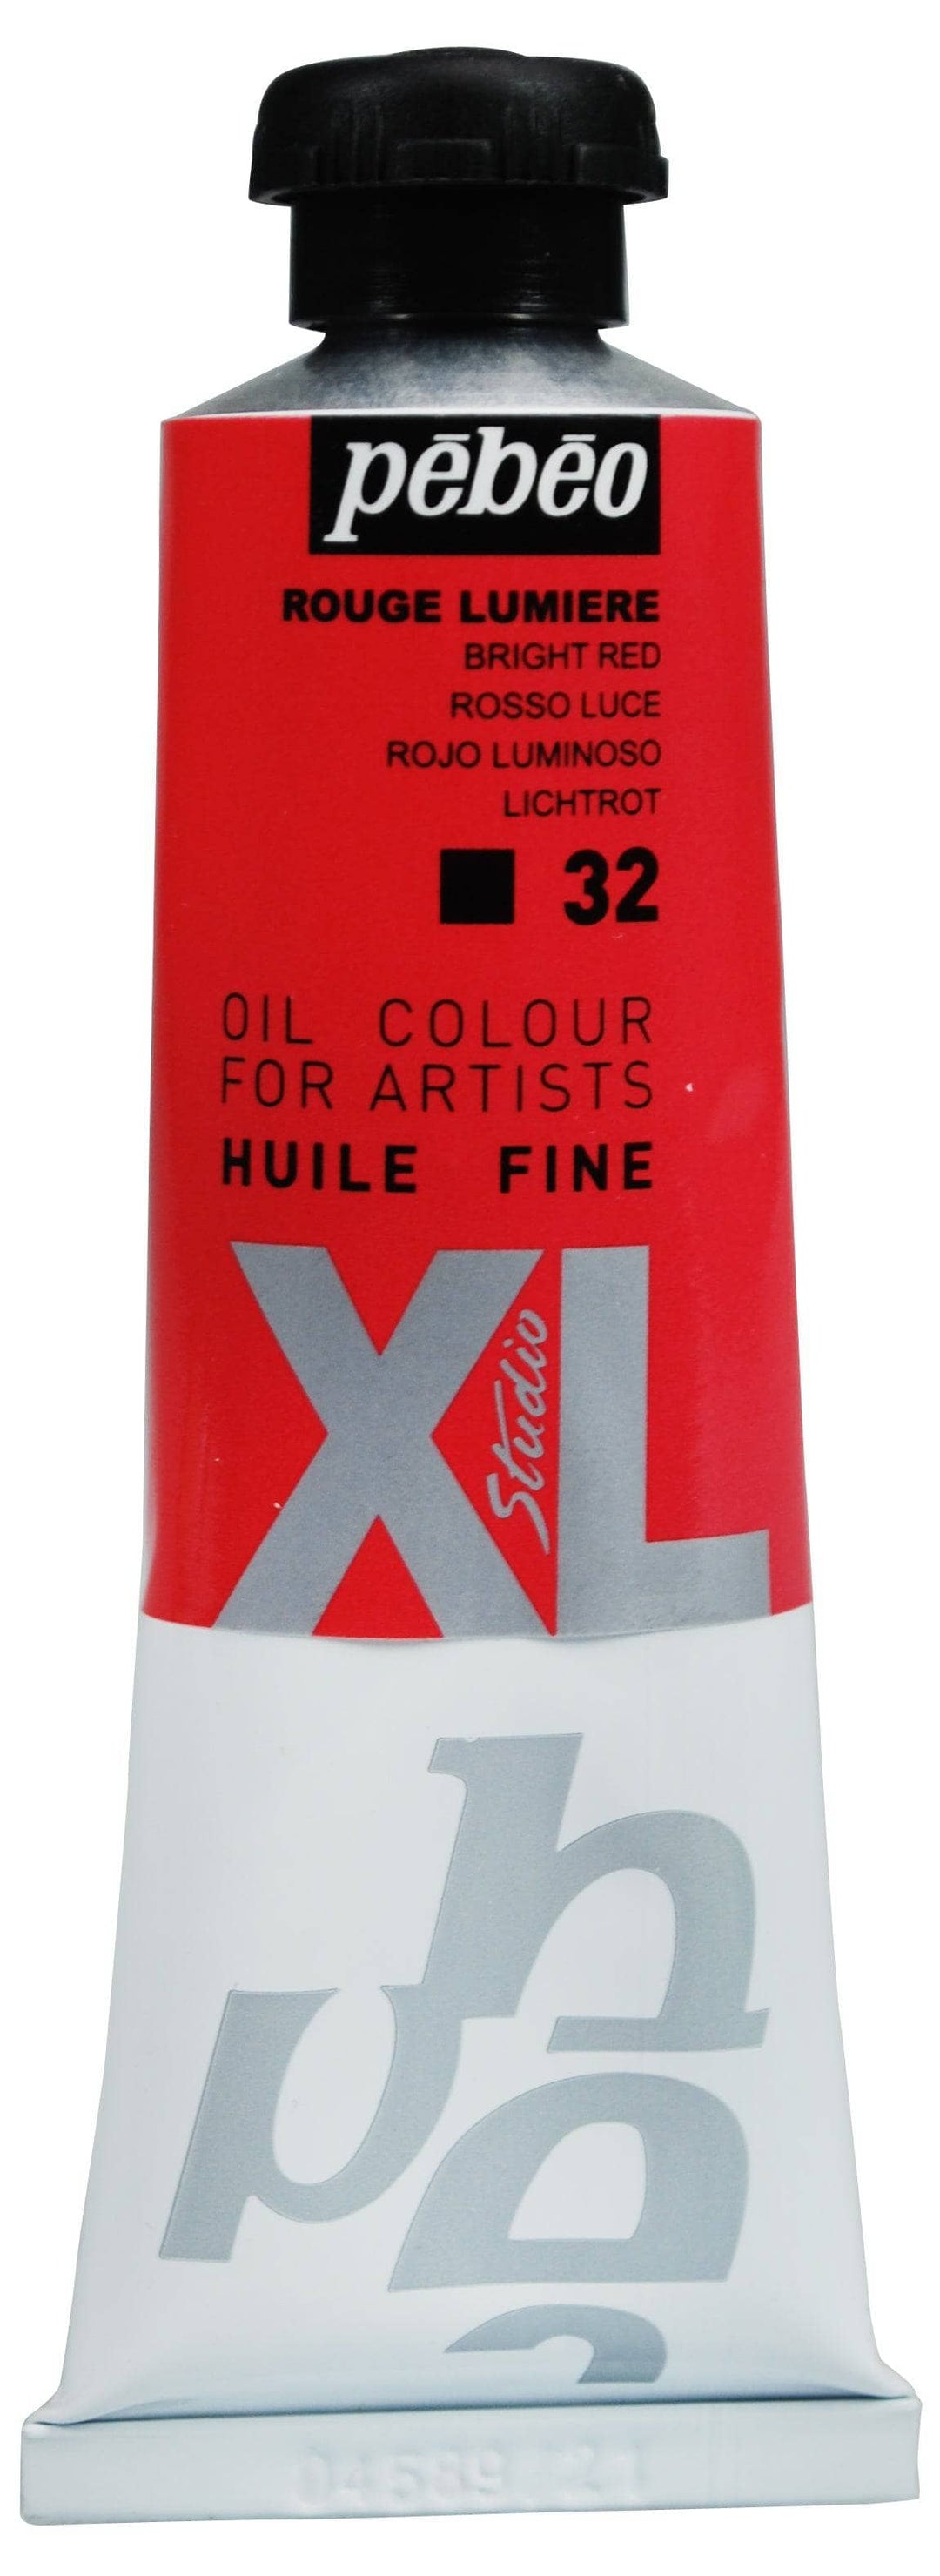 Huile fine Studio XL 37ml - Rouge Lumière
PB937032